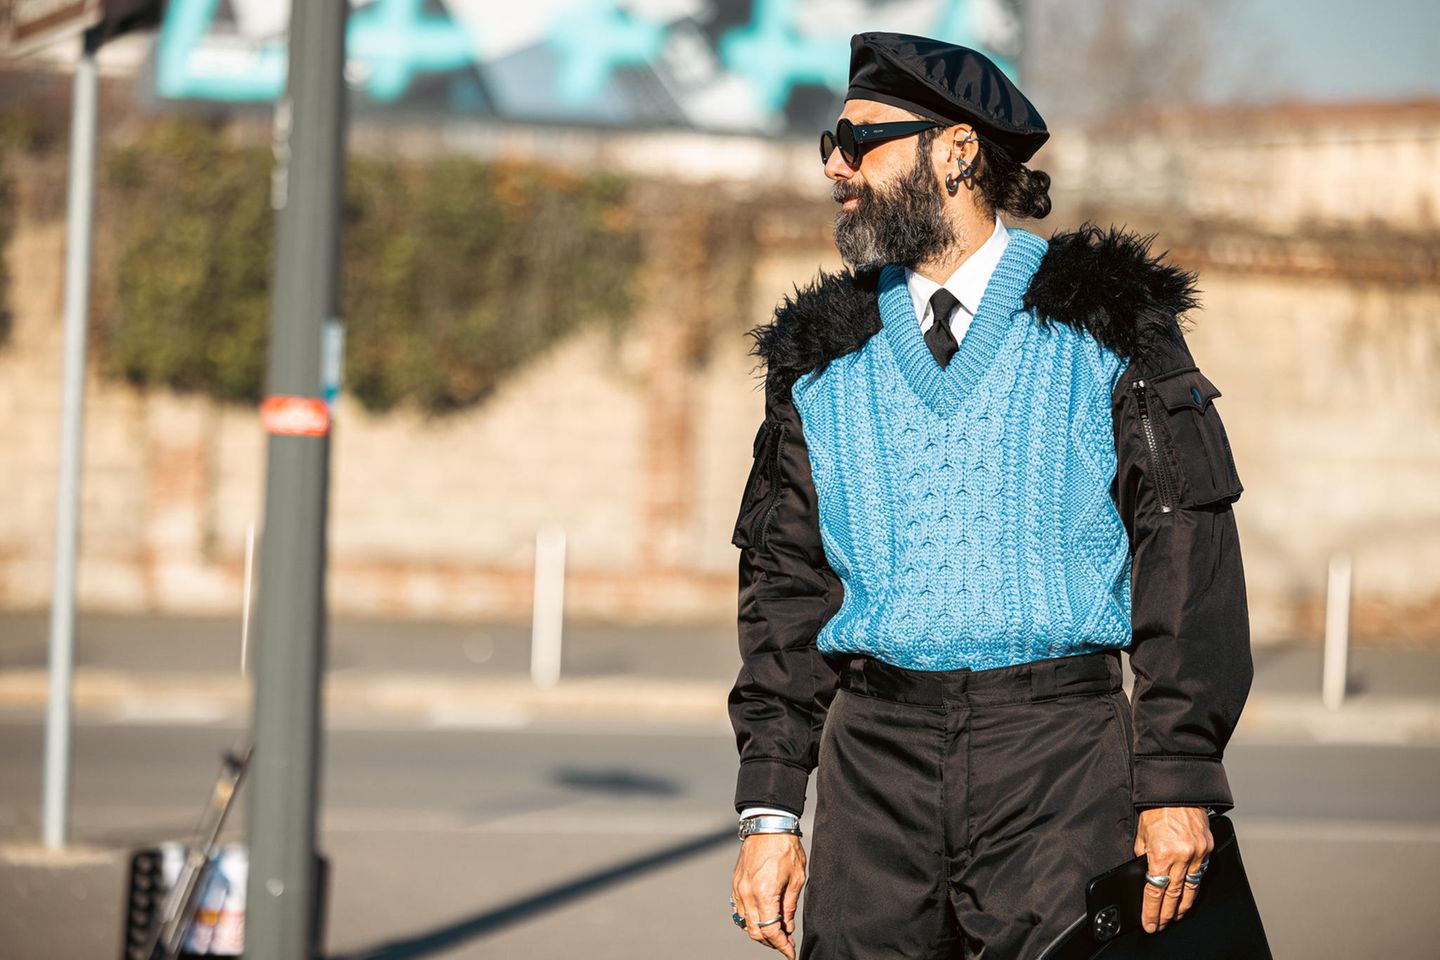 Streetstyles sollen und dürfen außergewöhnlich sein - vor allem auf der Fashion Week in Mailand. Der Look von Graziano di Cintio für die Frühjahr-/Sommerkollektion 2022 von Prada Menswear sticht dort ganz besonders ins Auge. Er trägt einen farbenfrohen Pullunder, bei dem die Schultern mit Fell besetzt sind. Ein besonderes Outfit, das zu ihm passt, aber sicherlich als skurril betrachtet werden darf. Auch die Bomberjacke, die er drunter trägt, macht es zu einem merkwürdigen Look.